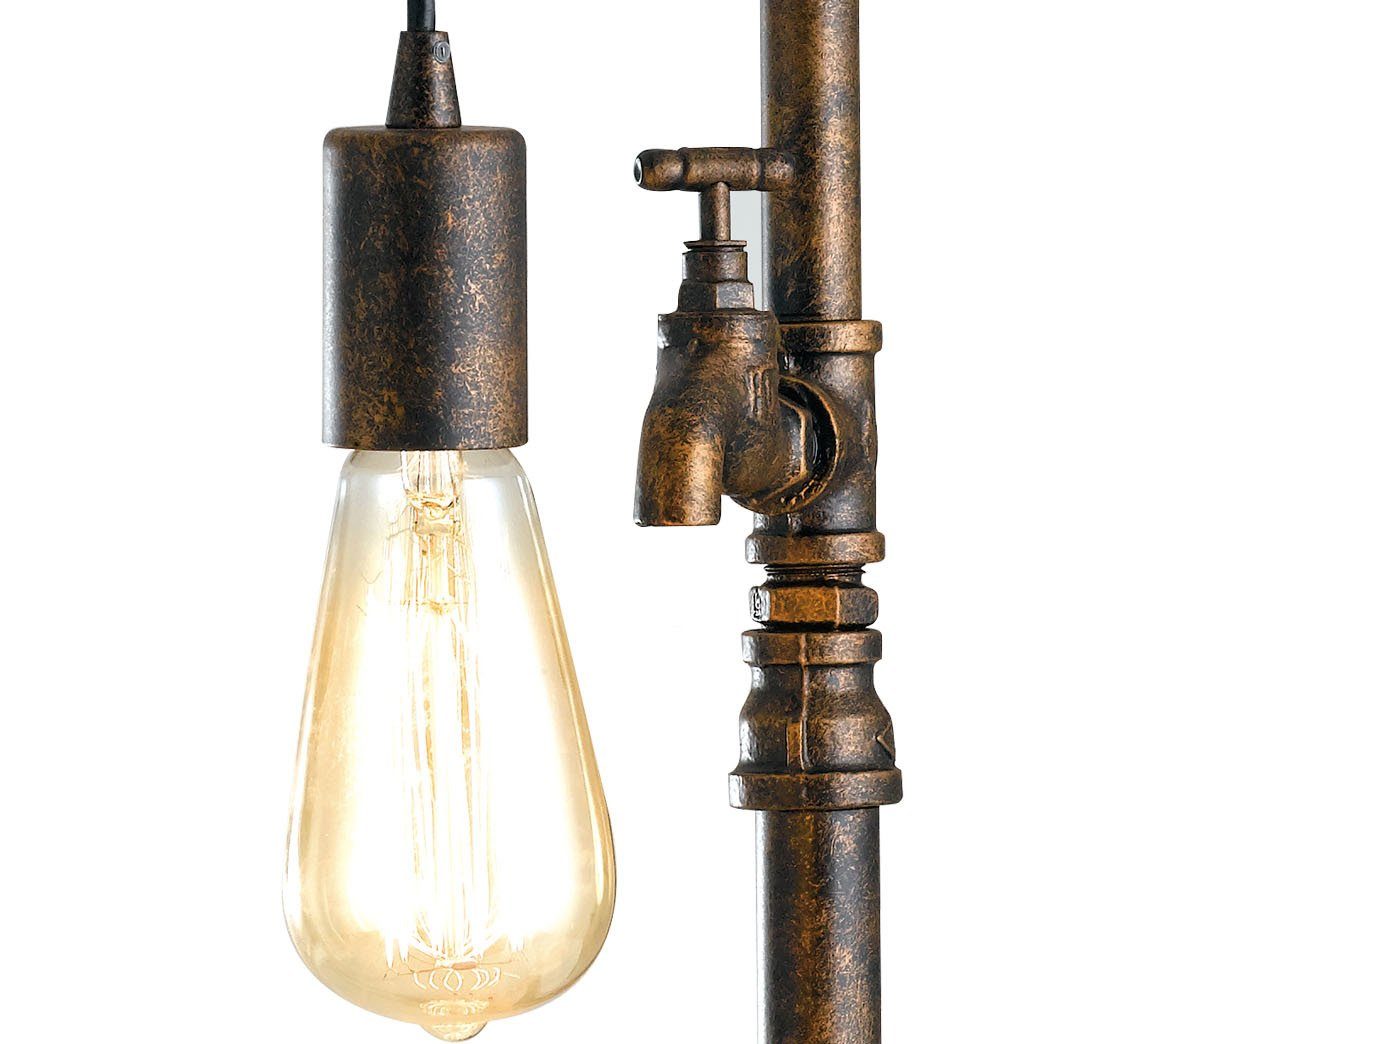 H: Lampe Rost-optik, in wechselbar, Rohr Industrial 61cm ausgefallen-e LED rost warmweiß, LED Design groß-e Tischleuchte, LUCE antik